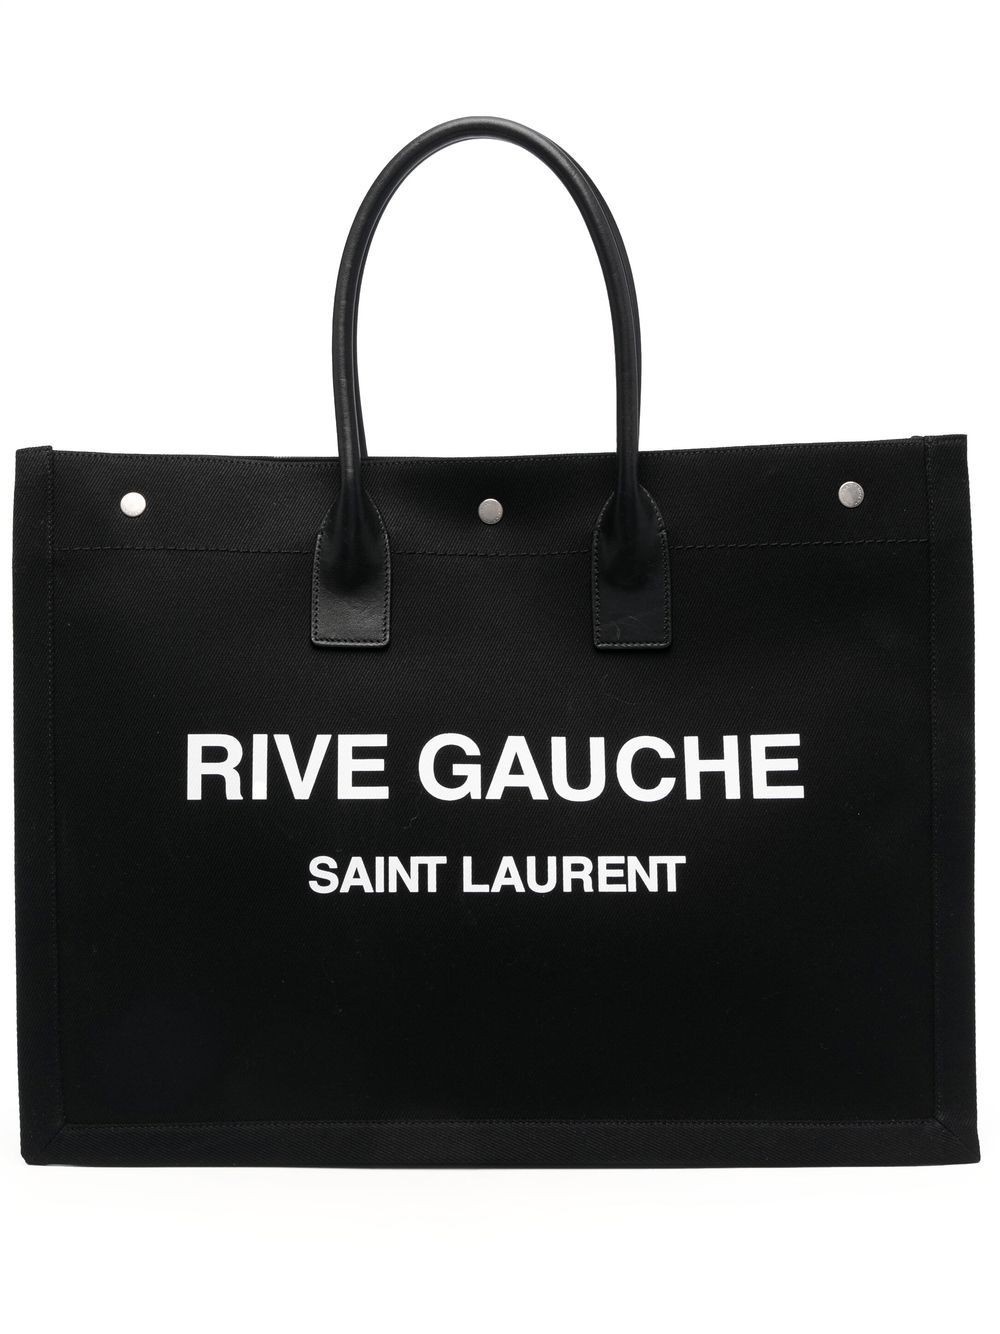 Saint Laurent Rive Gauche tote bag - Black von Saint Laurent